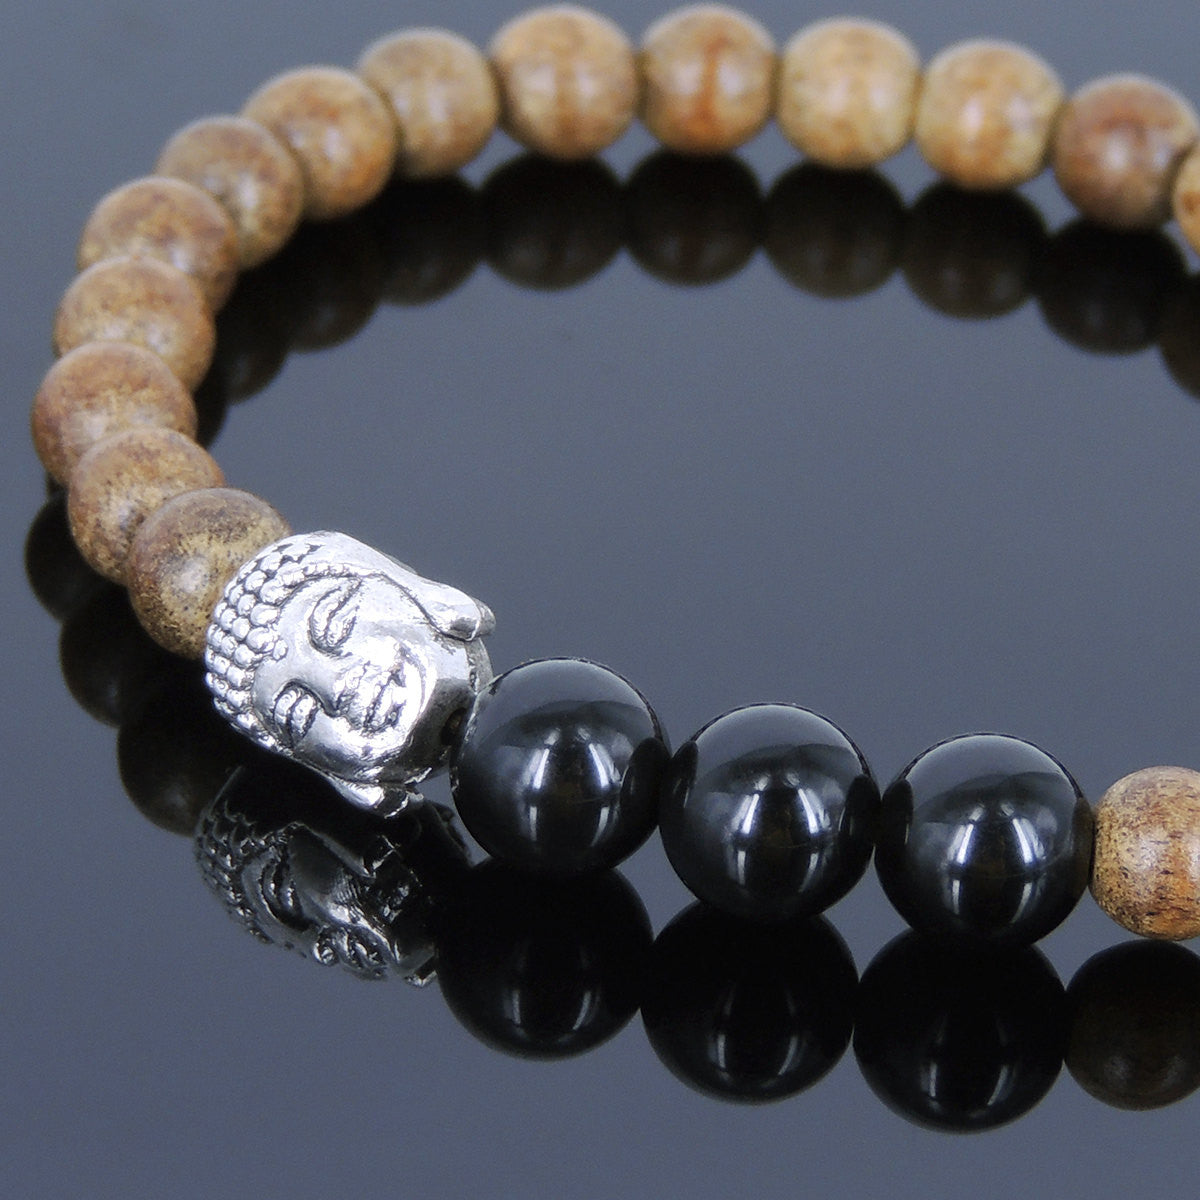 Meditation Agarwood & Black Obsidian Healing Gemstone Bracelet with Tibetan Silver Sakyamuni Buddha Meditation Mala Bead - Handmade by Gem & Silver AWB043